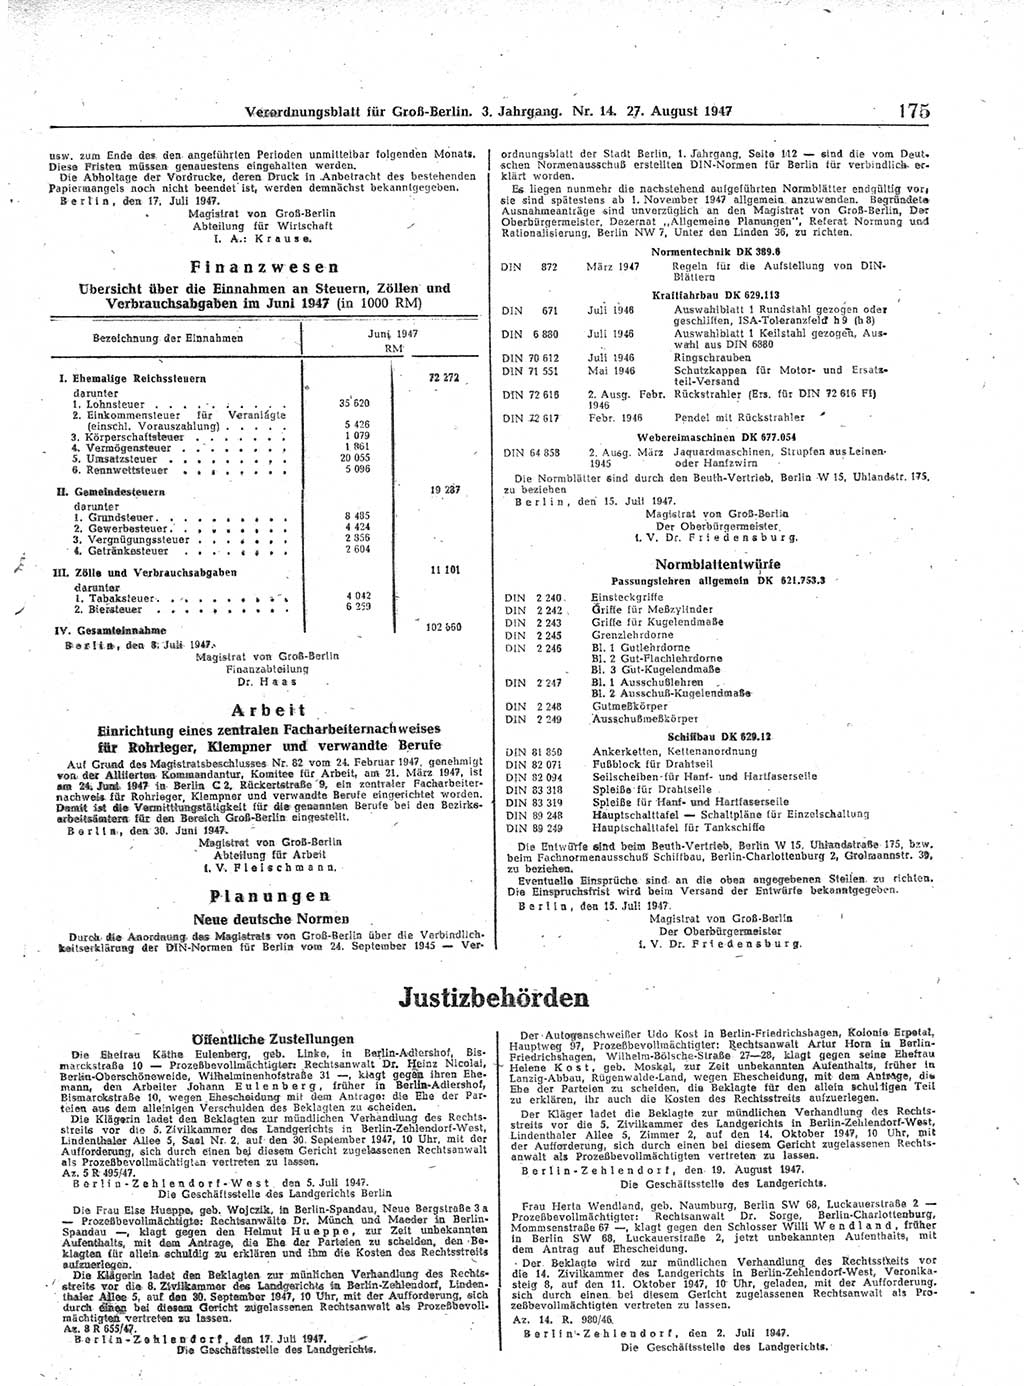 Verordnungsblatt (VOBl.) für Groß-Berlin 1947, Seite 175 (VOBl. Bln. 1947, S. 175)